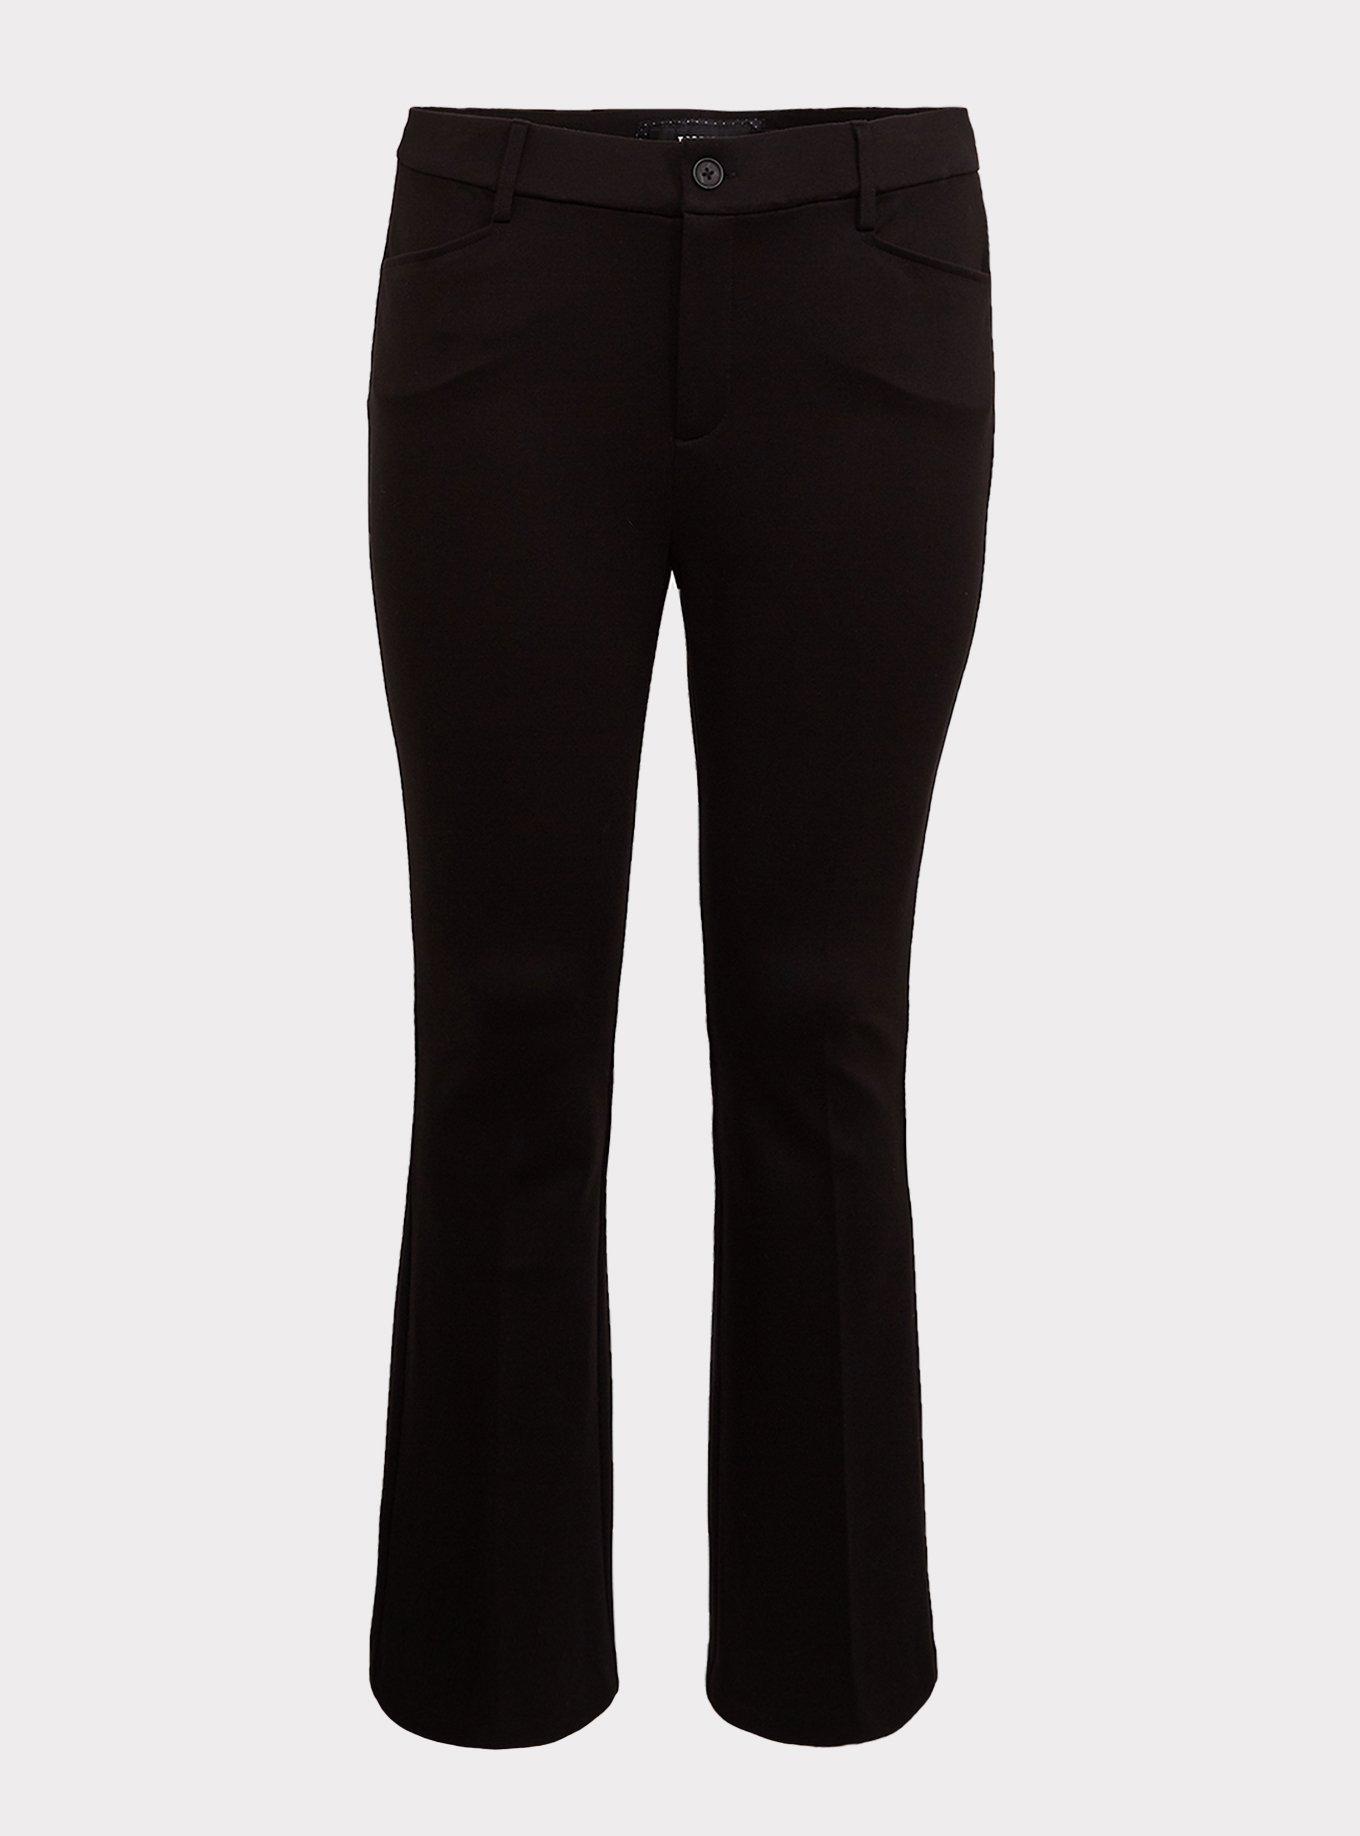 Plus Size - Studio Signature Premium Ponte Stretch Trouser - Black - Torrid